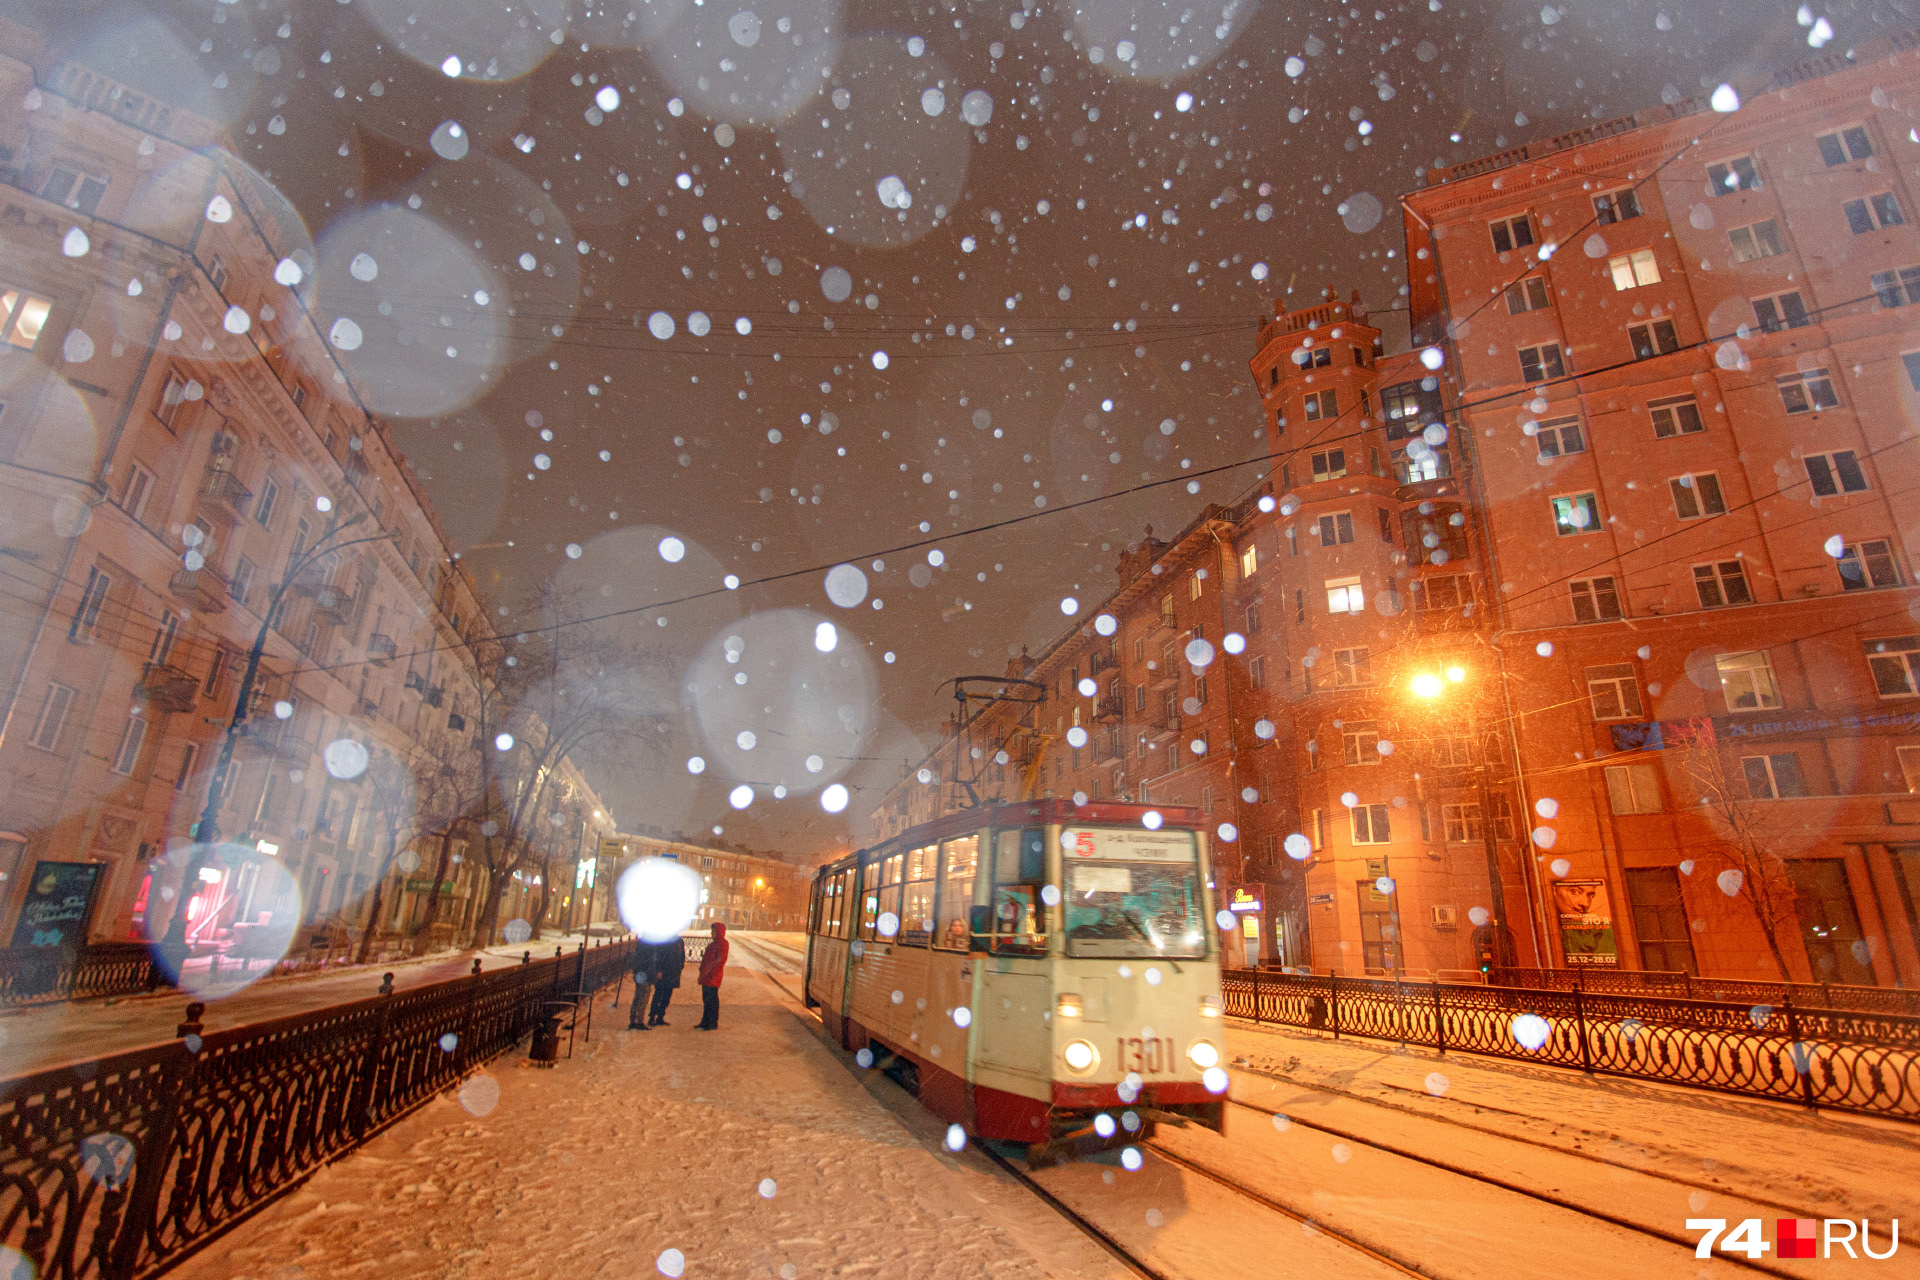 Снег в Челябинске шел с вечера 27 декабря